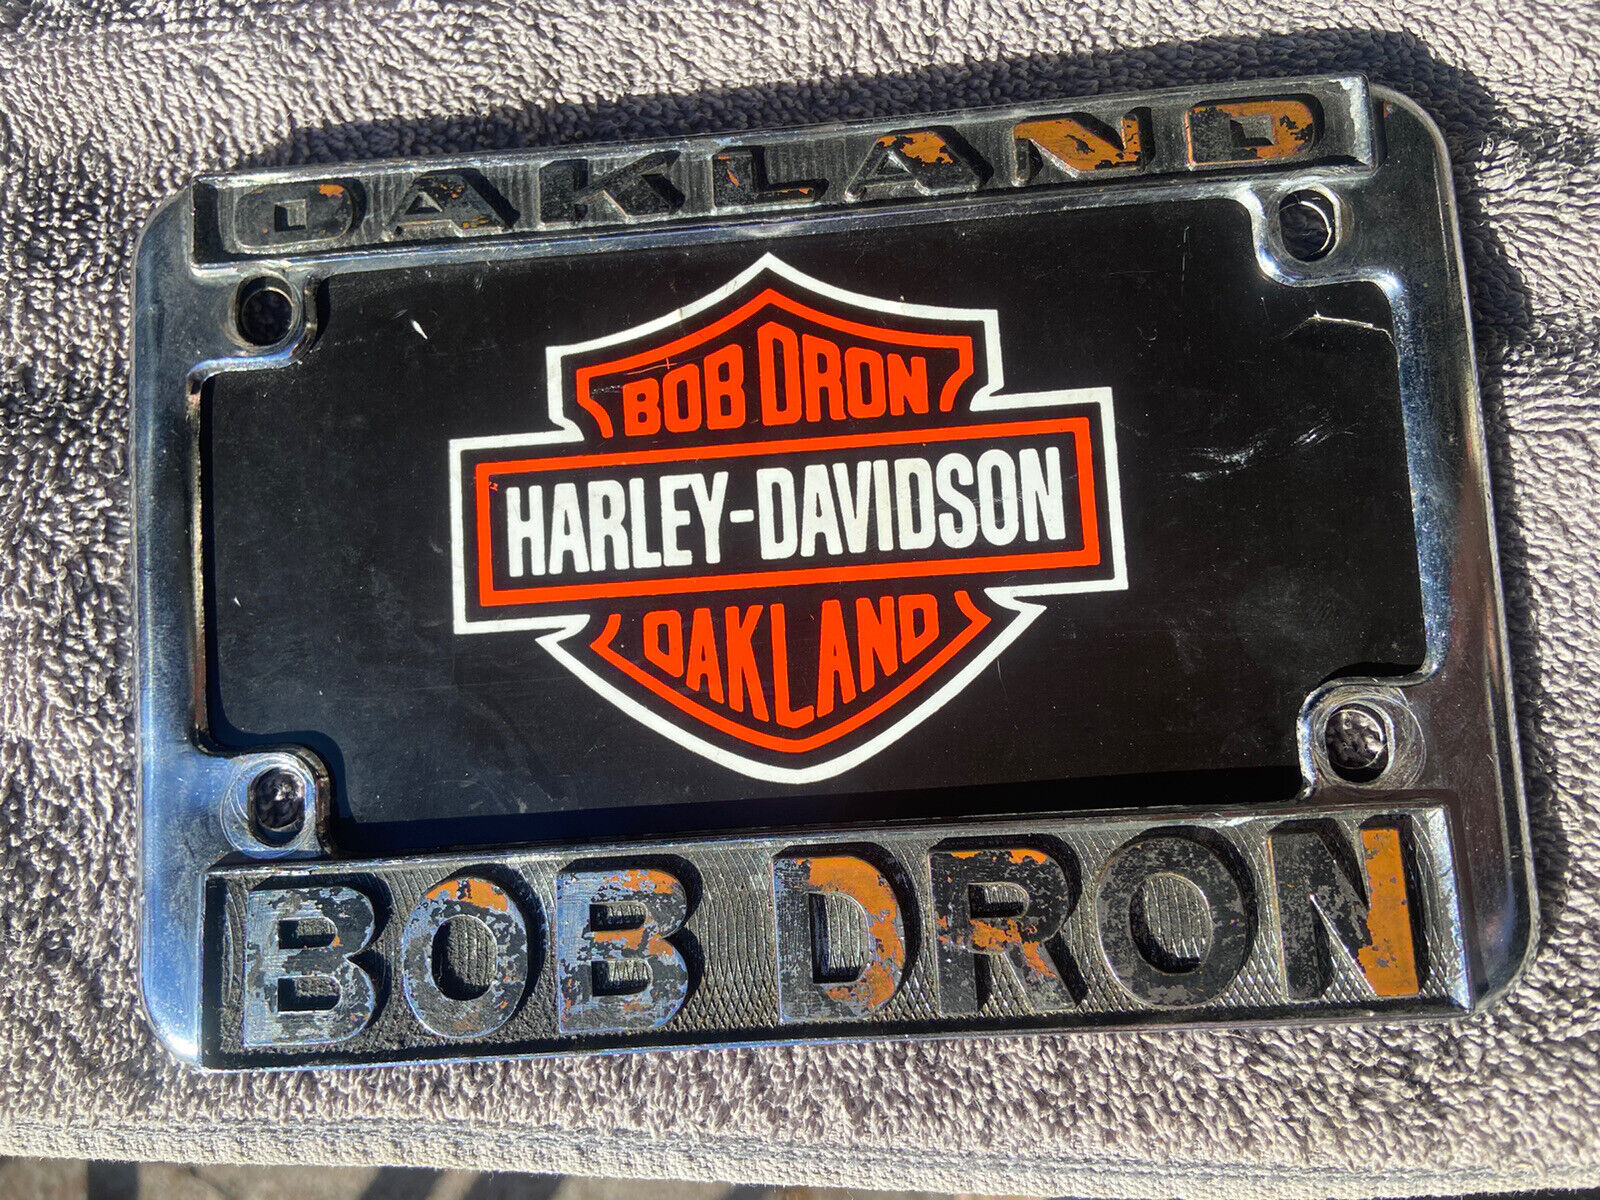 Vintage Bob Dron Oakland Ca Harley Dealer license plate frame